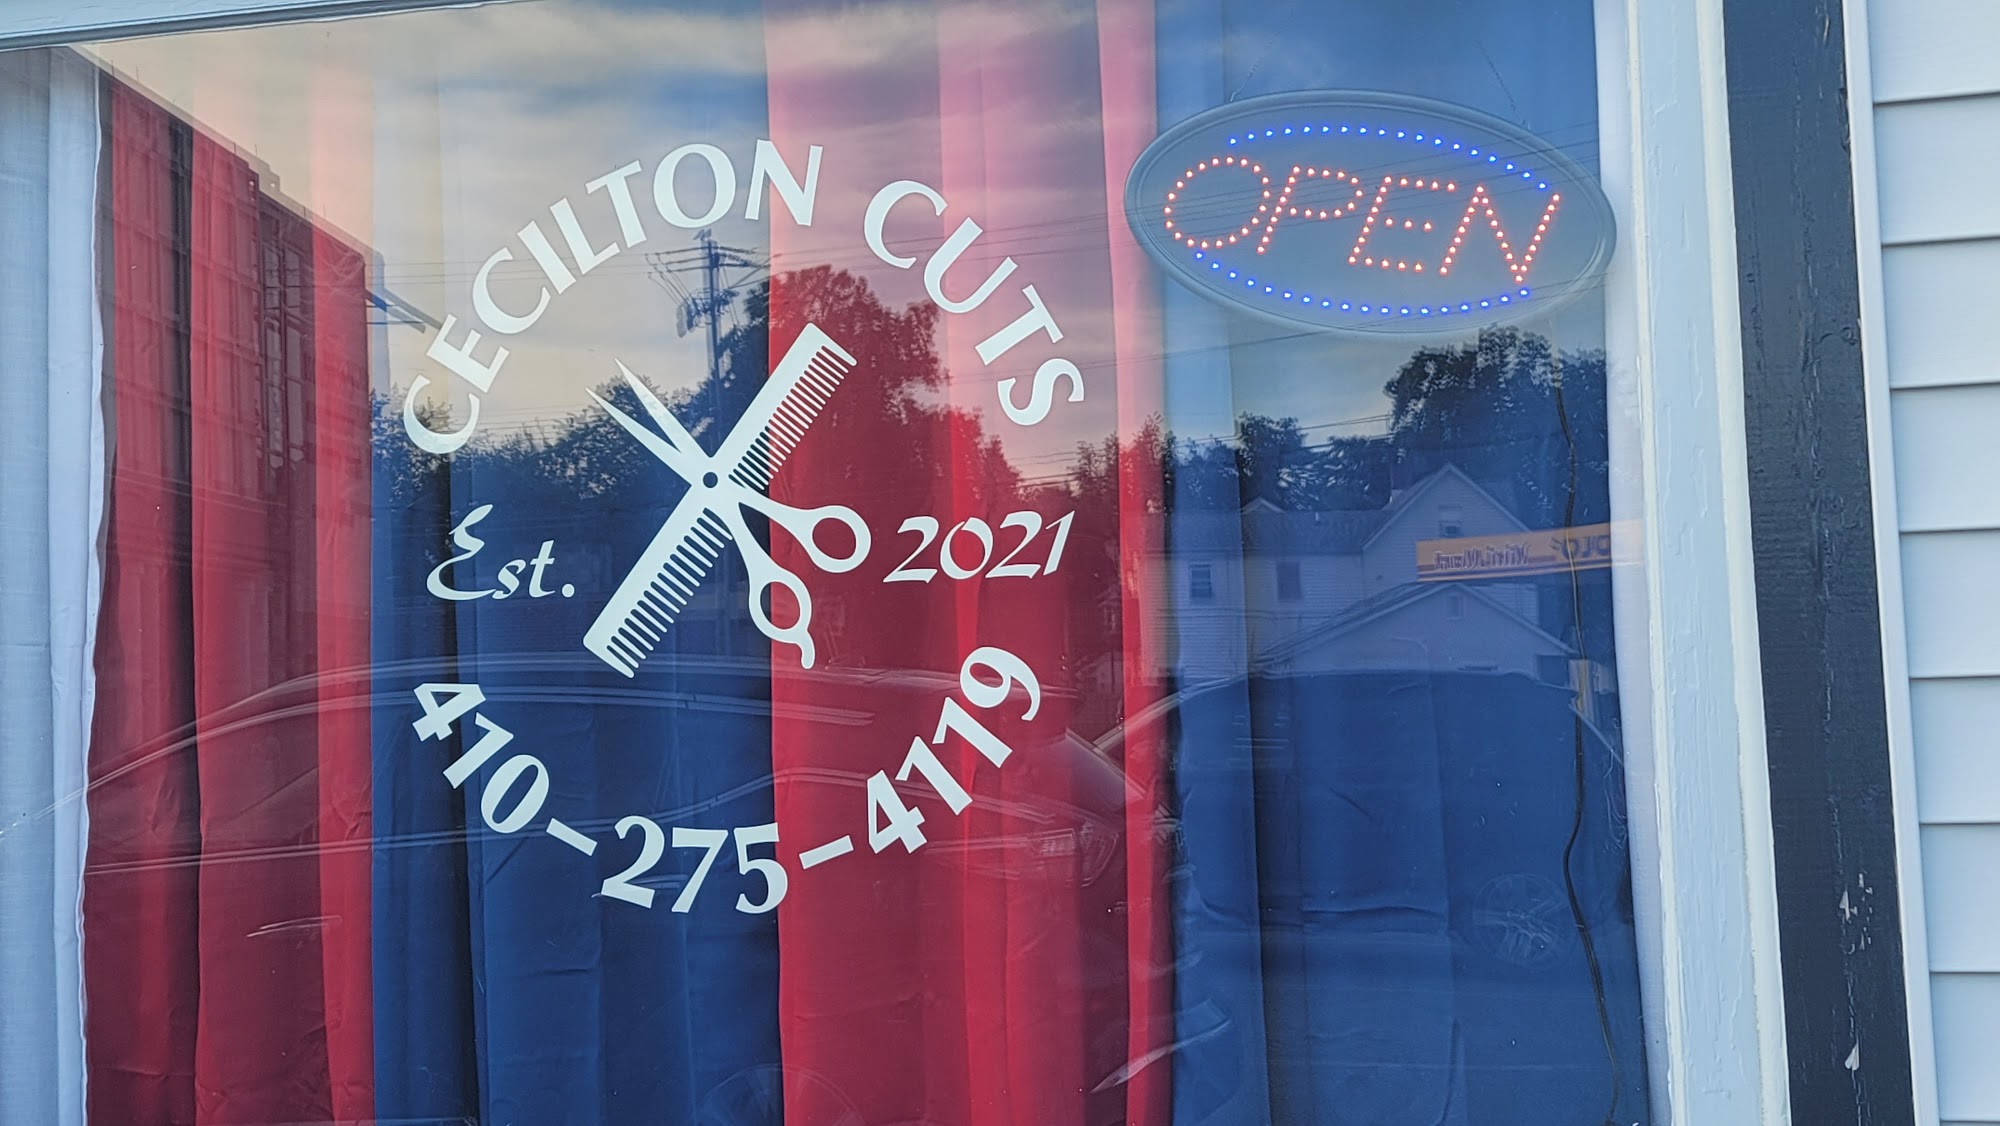 Cecilton Cuts